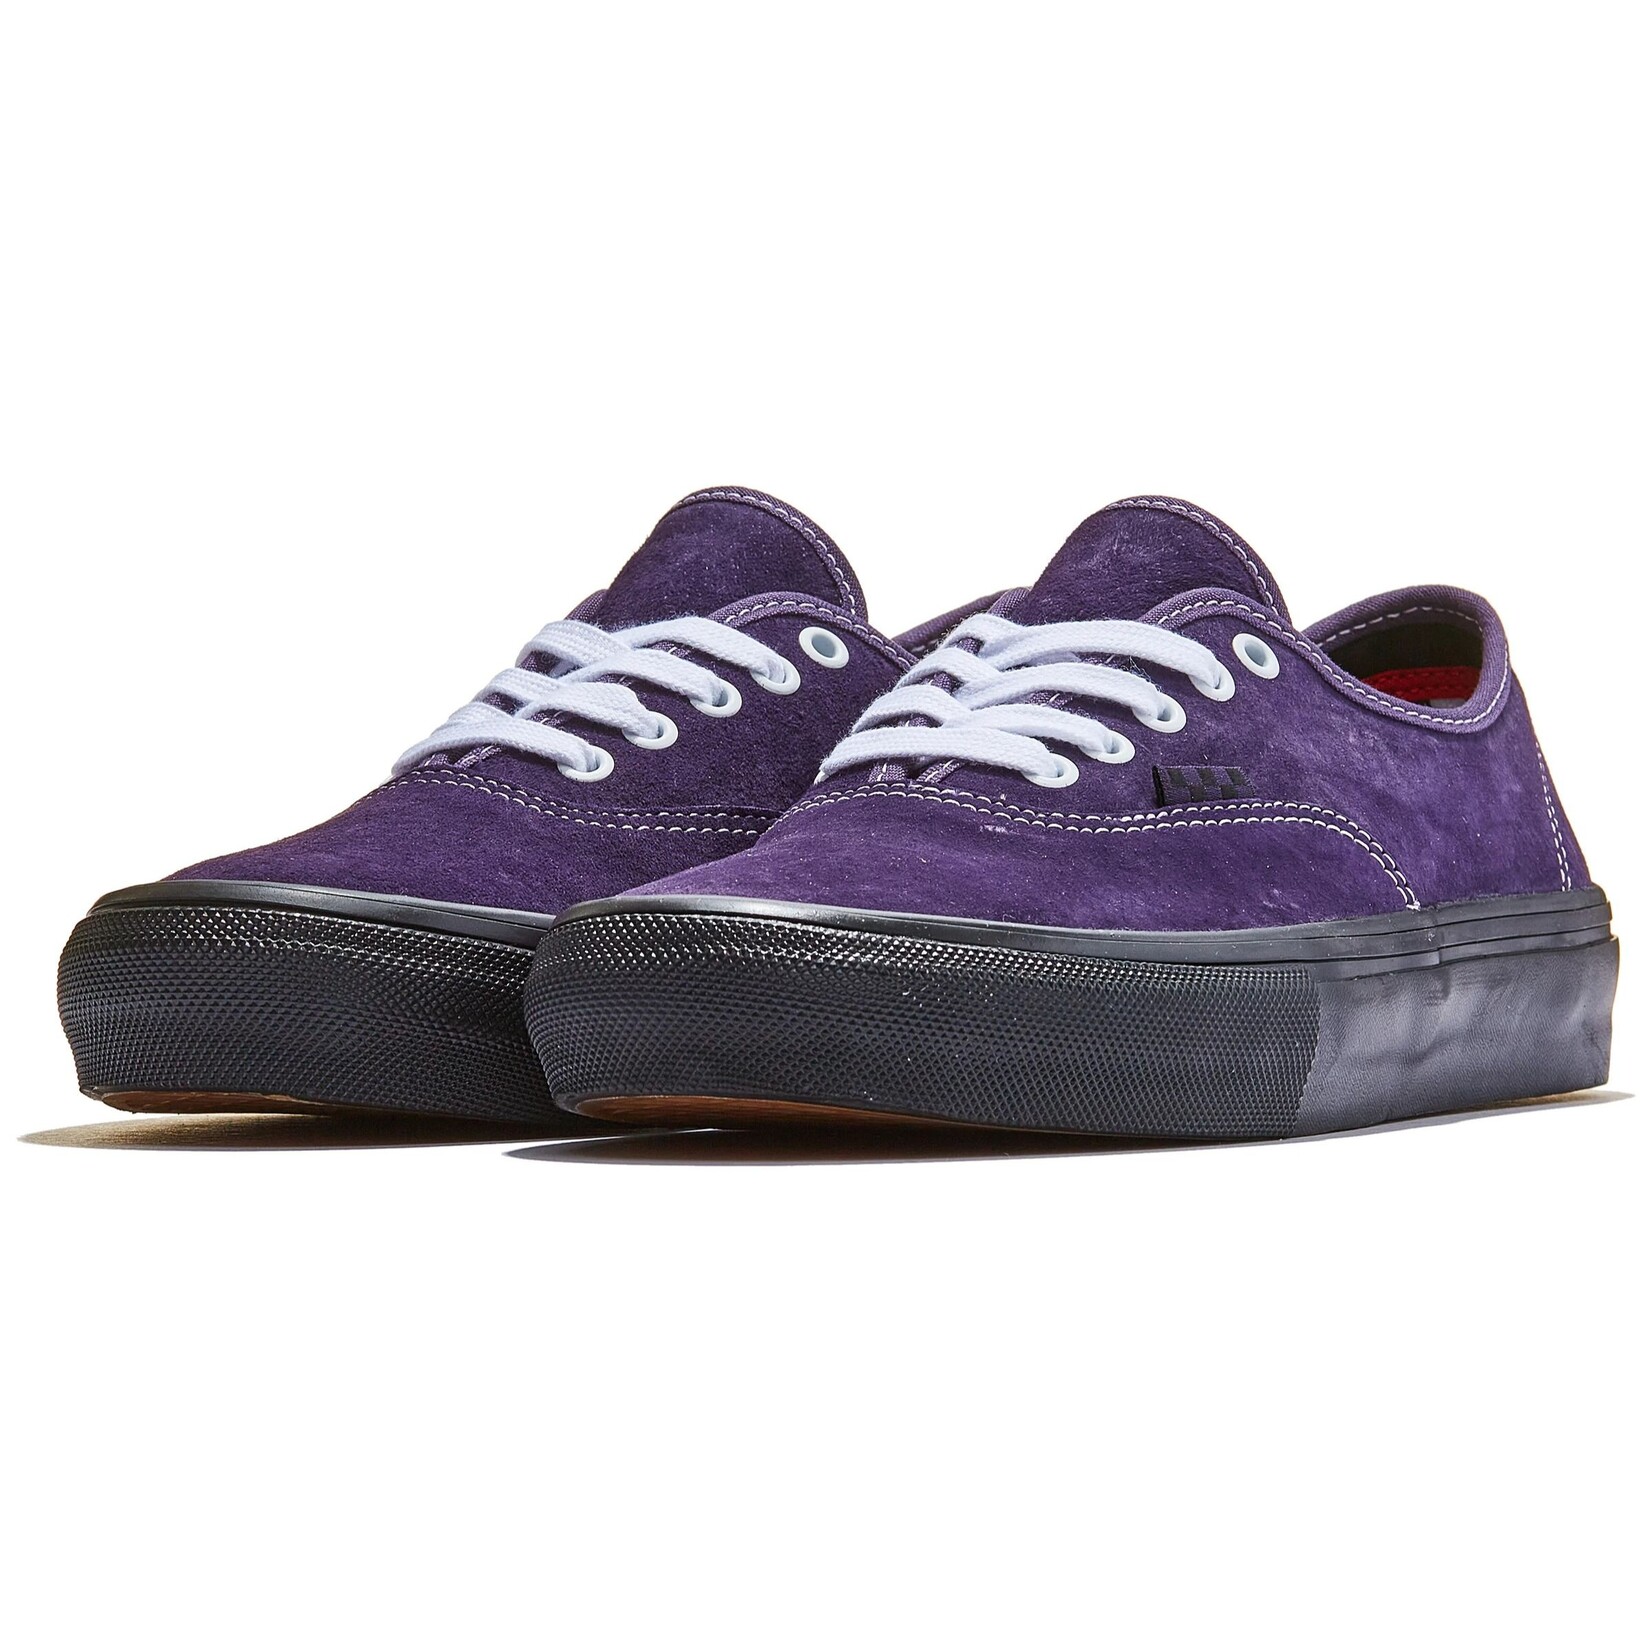 Vans Vans Authentic Pig Suede Skate Shoes- Dark Purple/Black